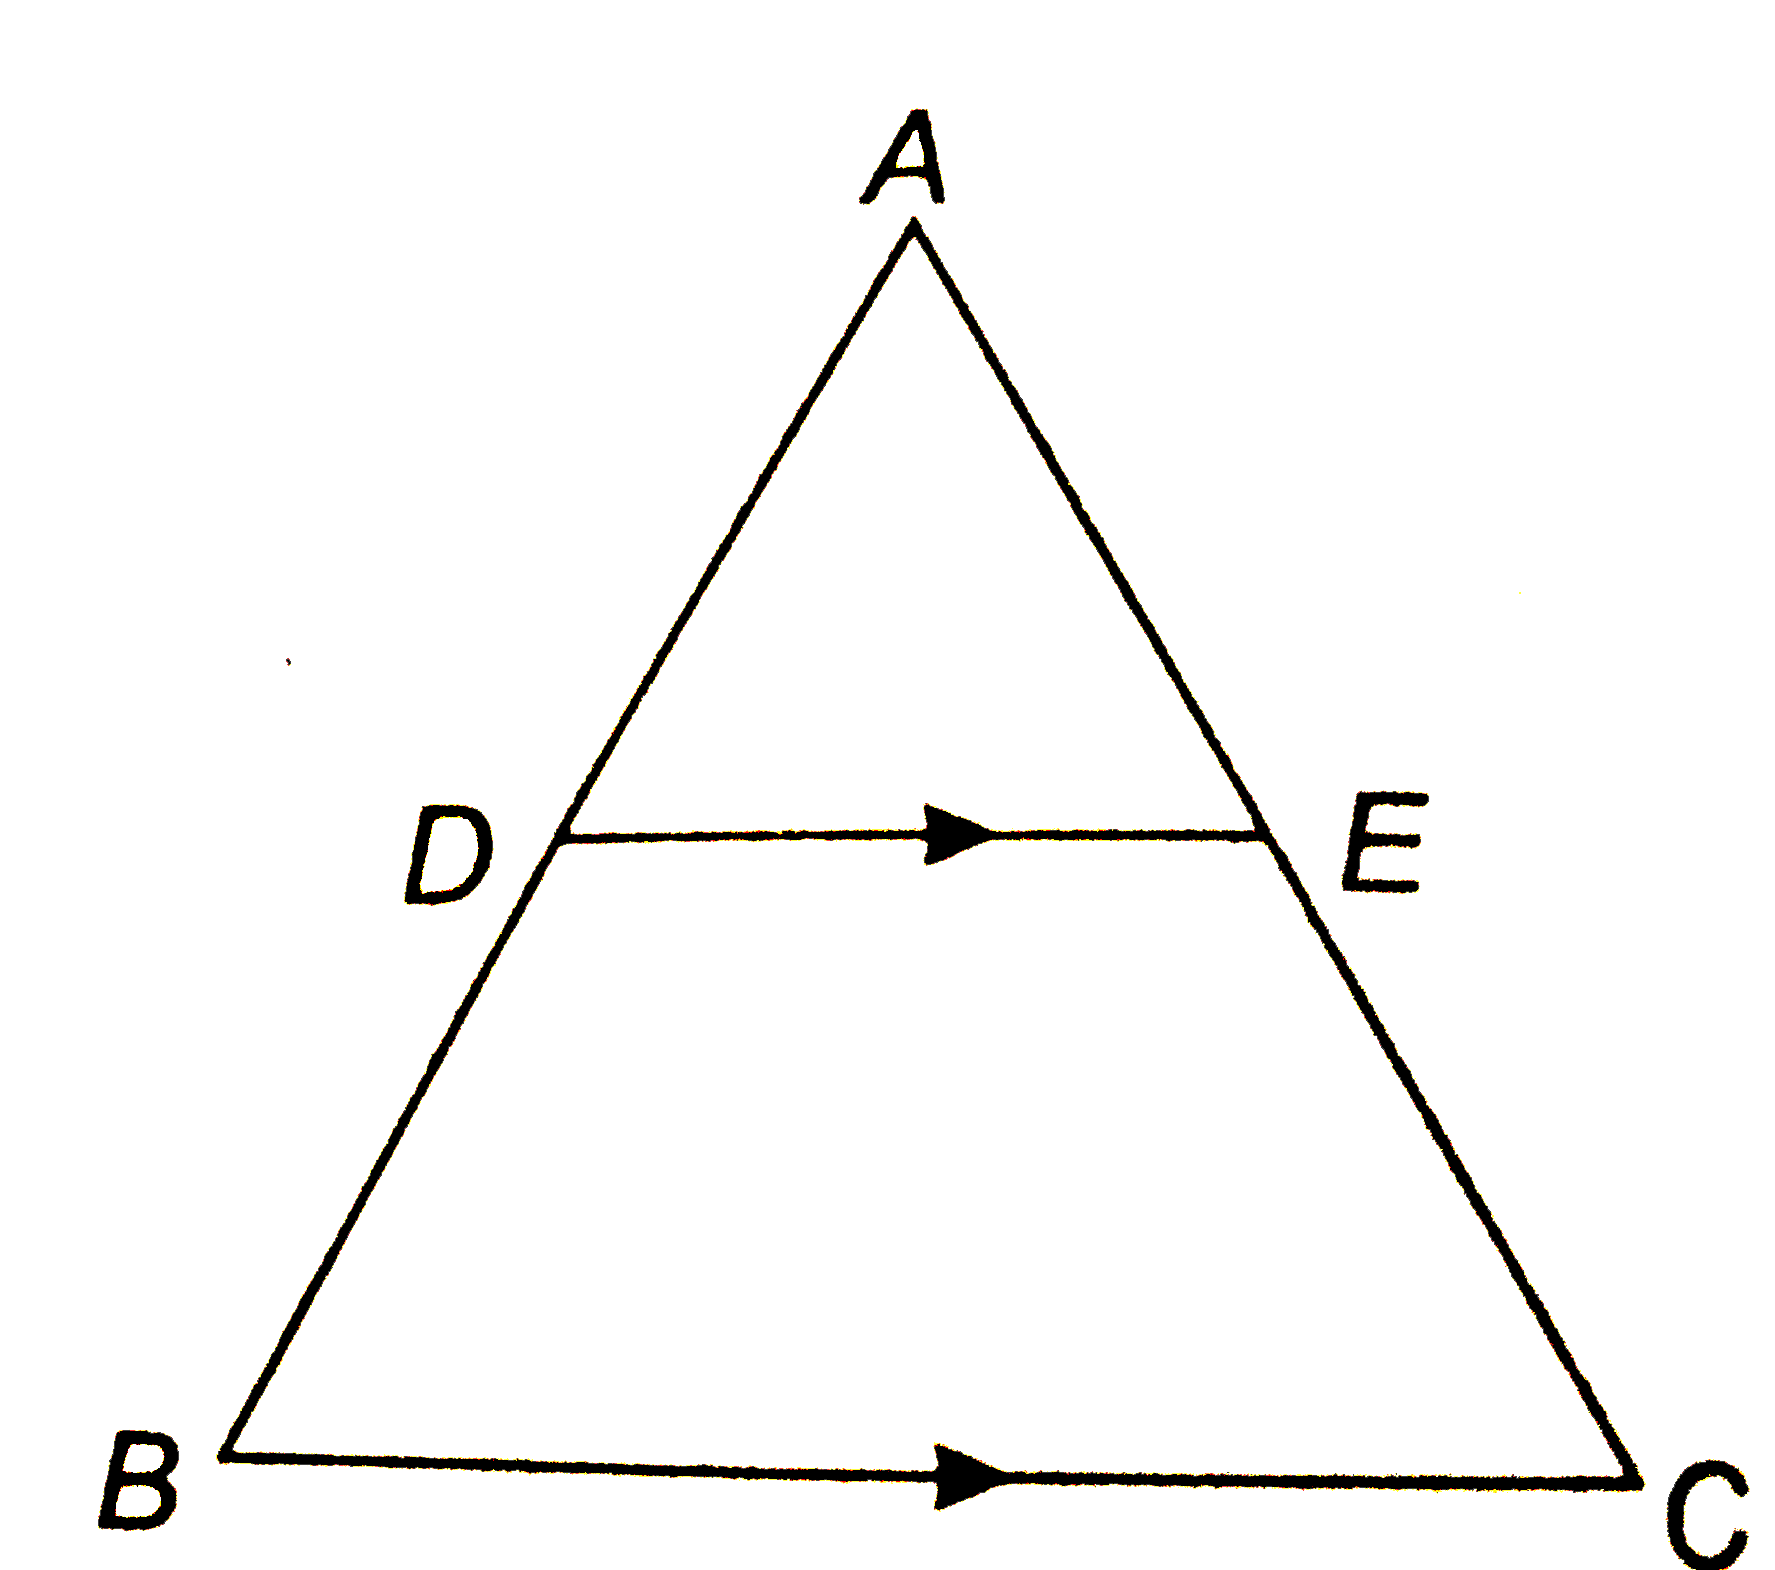 संलग्न चित्र में , बिन्दु D , AB को  3:5 में विभाजित करता है ज्ञात कीजिये    (i) (AE)/(EC)  (ii) (AD)/(AB)   (iii) (AE)/(AC)